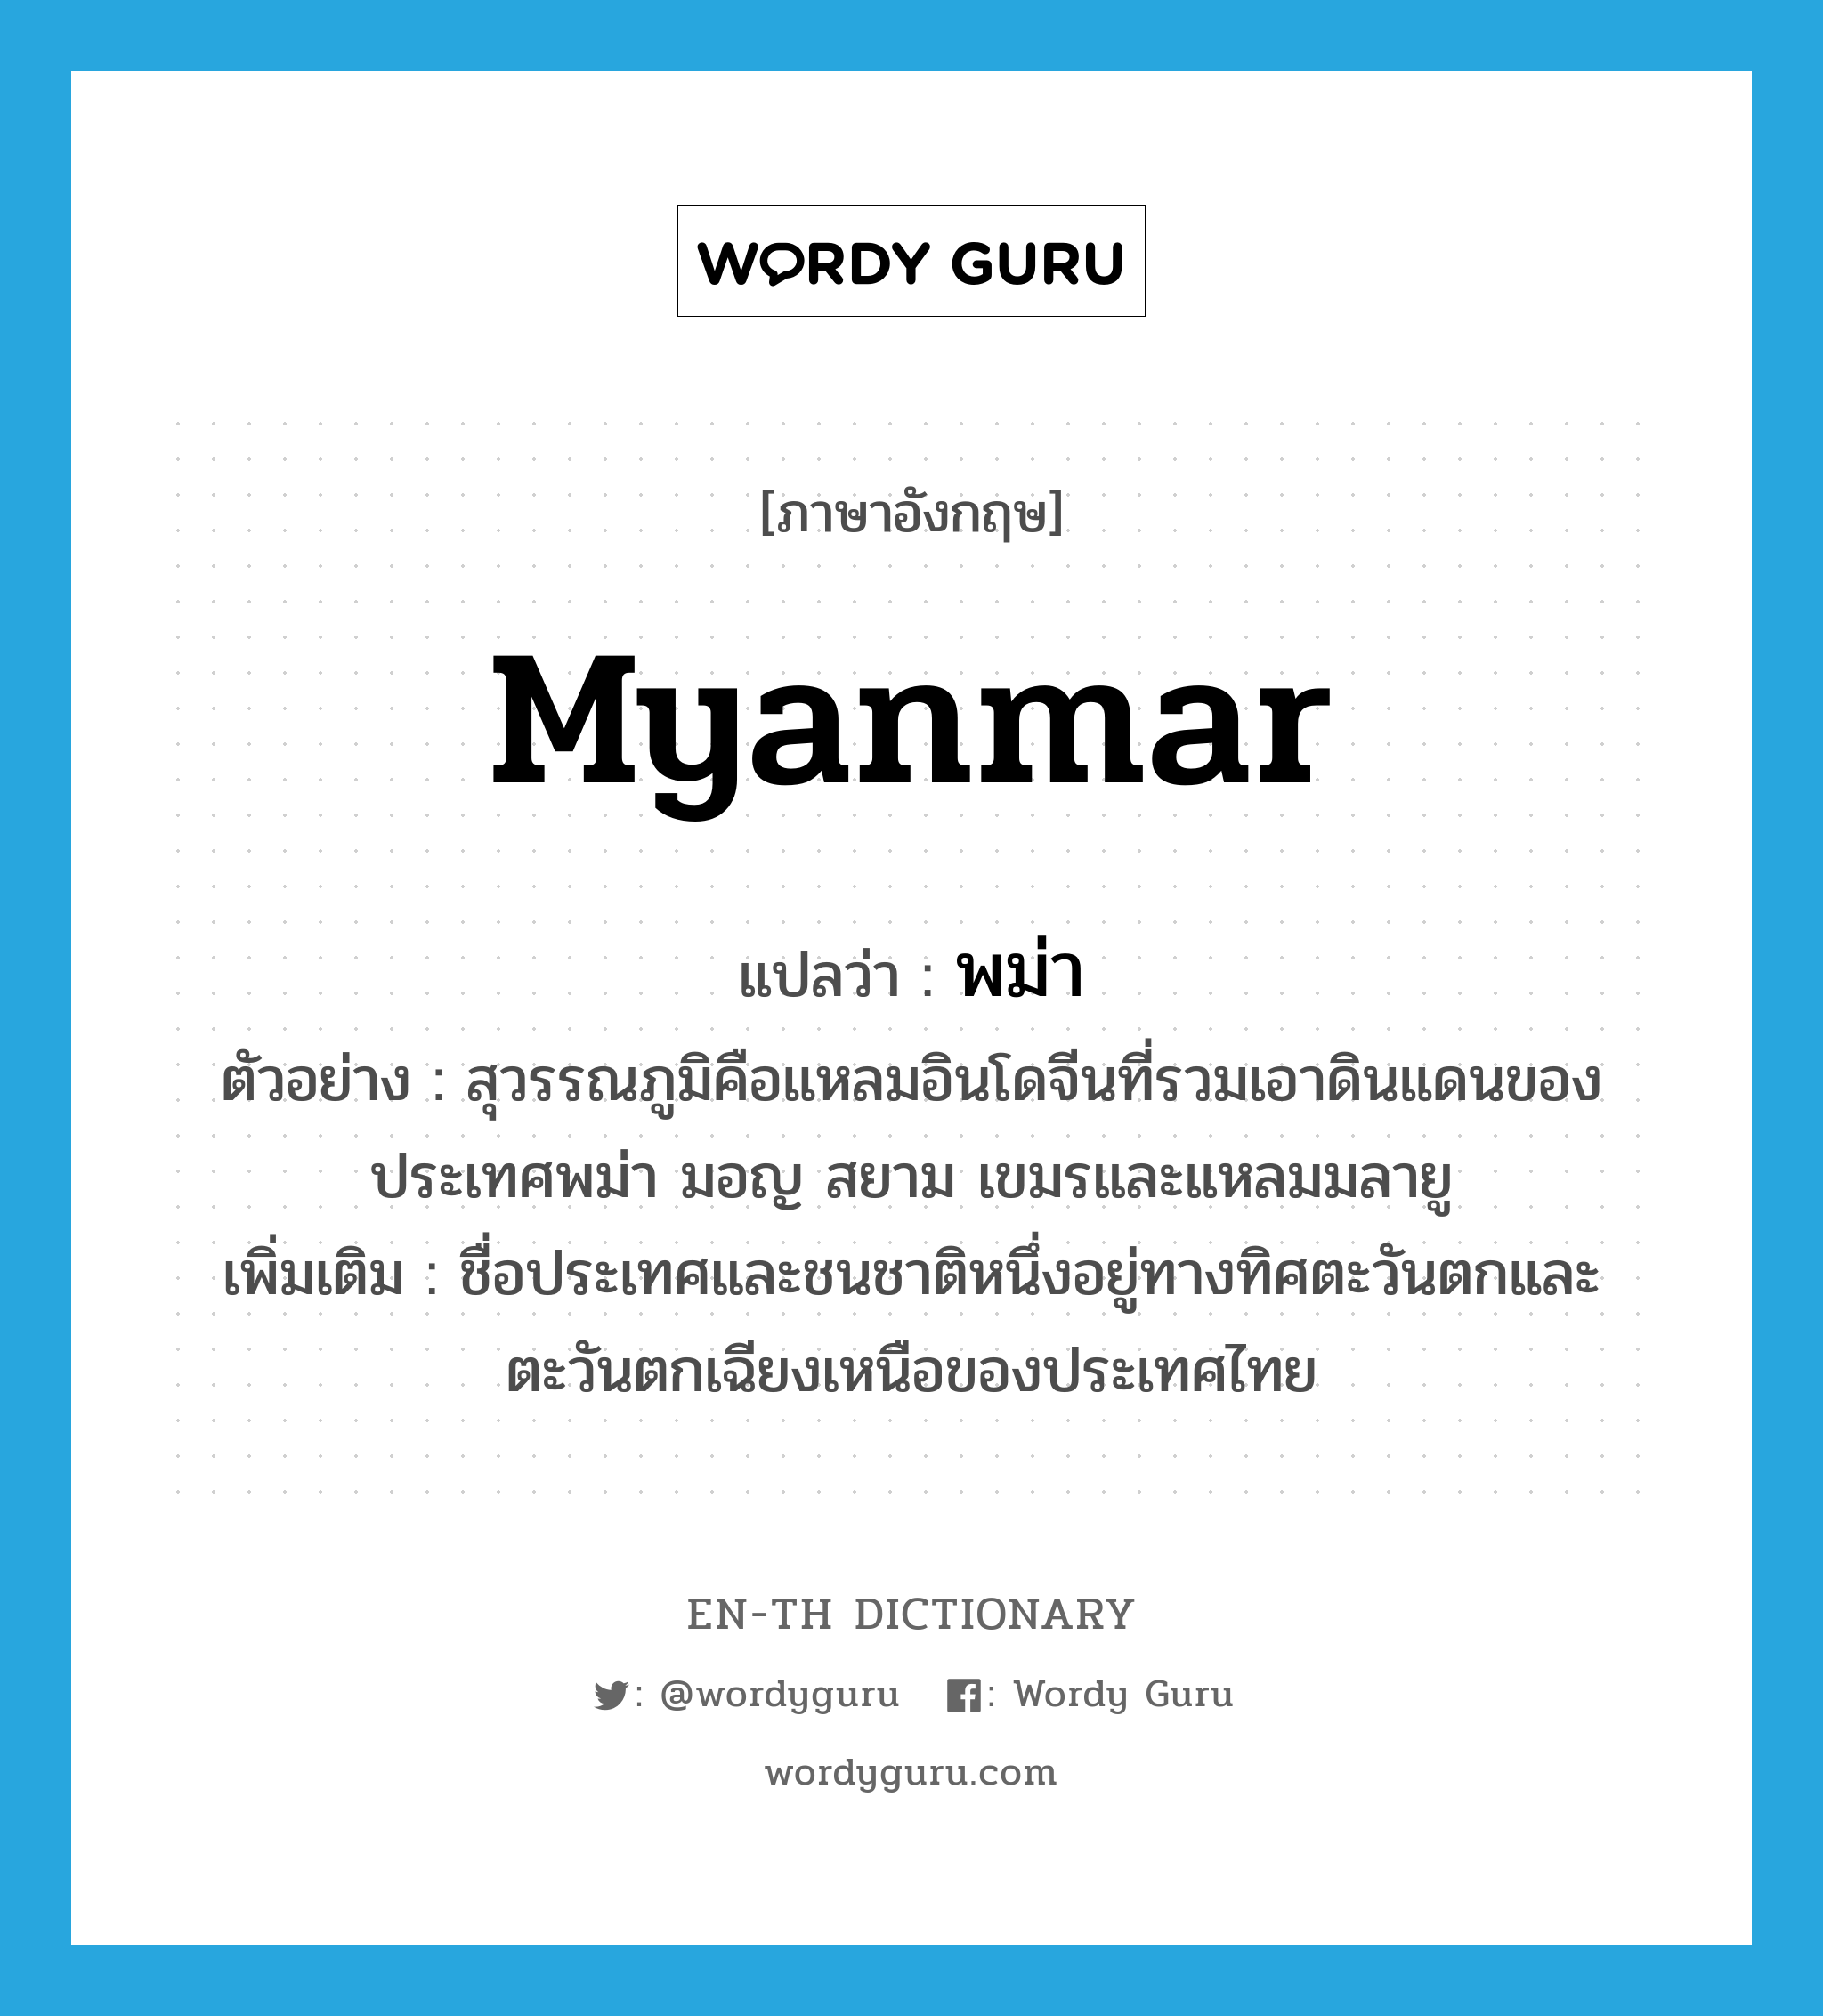 Myanmar แปลว่า?, คำศัพท์ภาษาอังกฤษ Myanmar แปลว่า พม่า ประเภท N ตัวอย่าง สุวรรณภูมิคือแหลมอินโดจีนที่รวมเอาดินแดนของประเทศพม่า มอญ สยาม เขมรและแหลมมลายู เพิ่มเติม ชื่อประเทศและชนชาติหนึ่งอยู่ทางทิศตะวันตกและตะวันตกเฉียงเหนือของประเทศไทย หมวด N